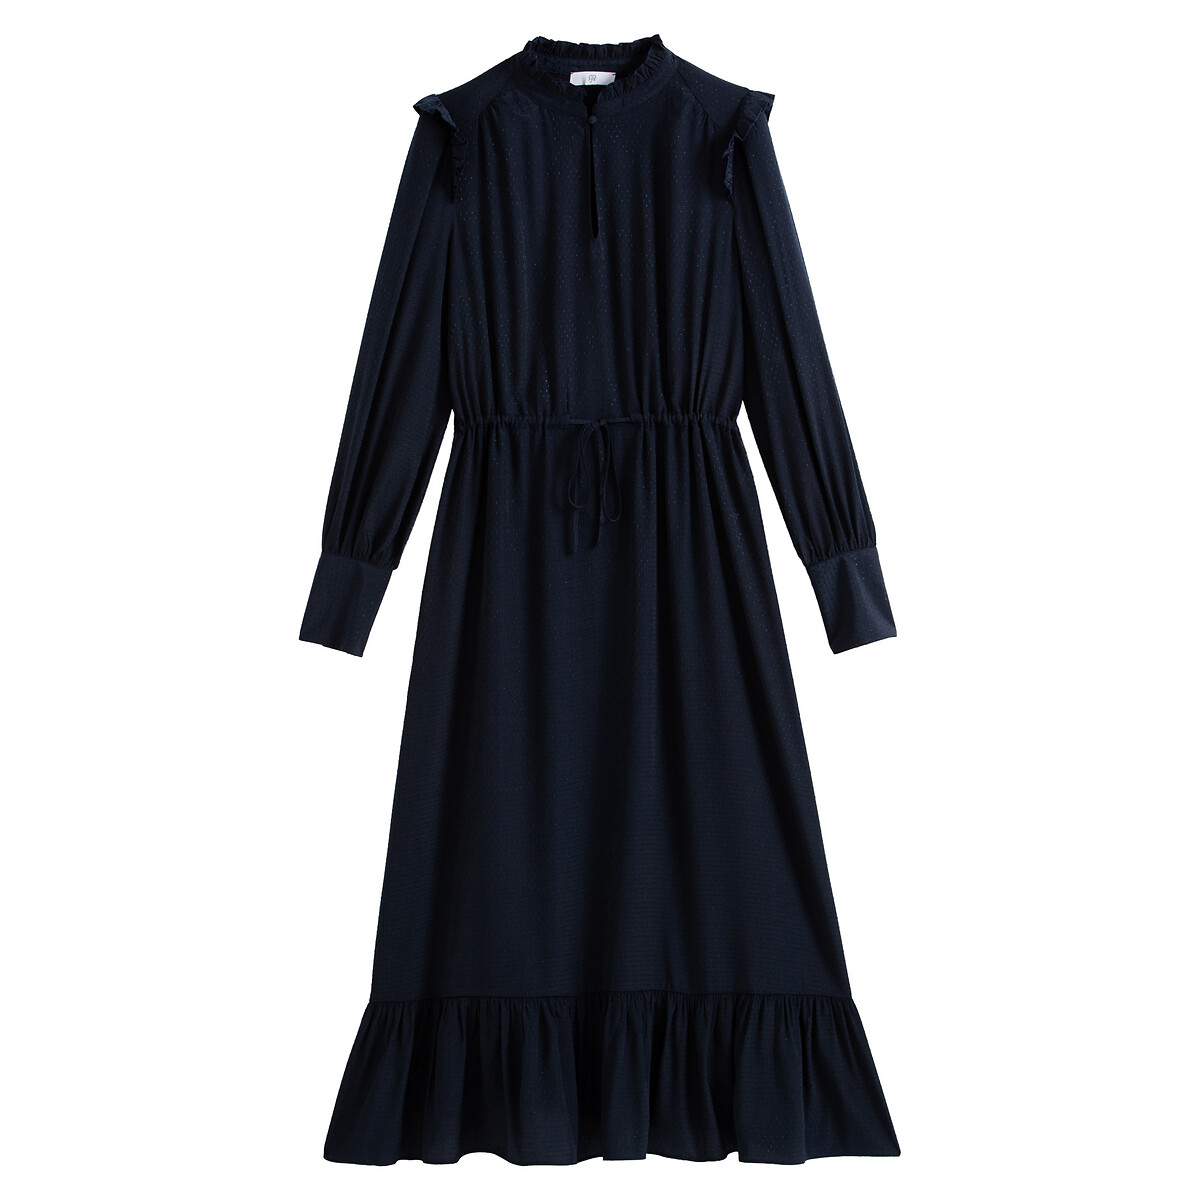 Платье La Redoute Длинное из атласной ткани 46 (FR) - 52 (RUS) синий, размер 46 (FR) - 52 (RUS) Длинное из атласной ткани 46 (FR) - 52 (RUS) синий - фото 5